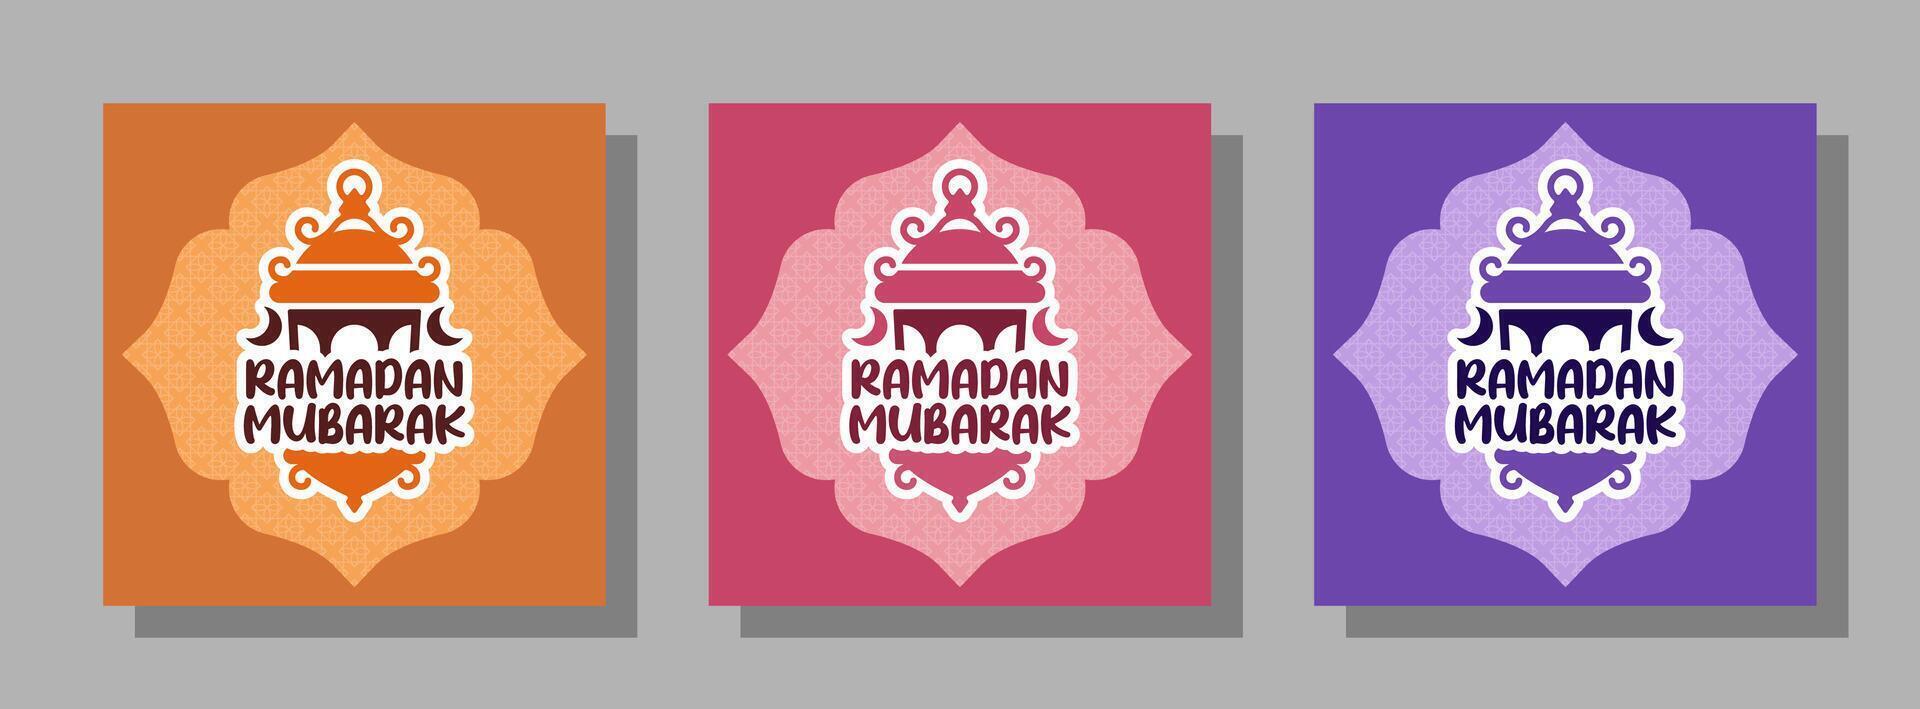 uppsättning av vektor ramadan mubarak för affischer, kort, täcker, och andra. lekfull mönster i en mängd av färger med modern lykta illustration.